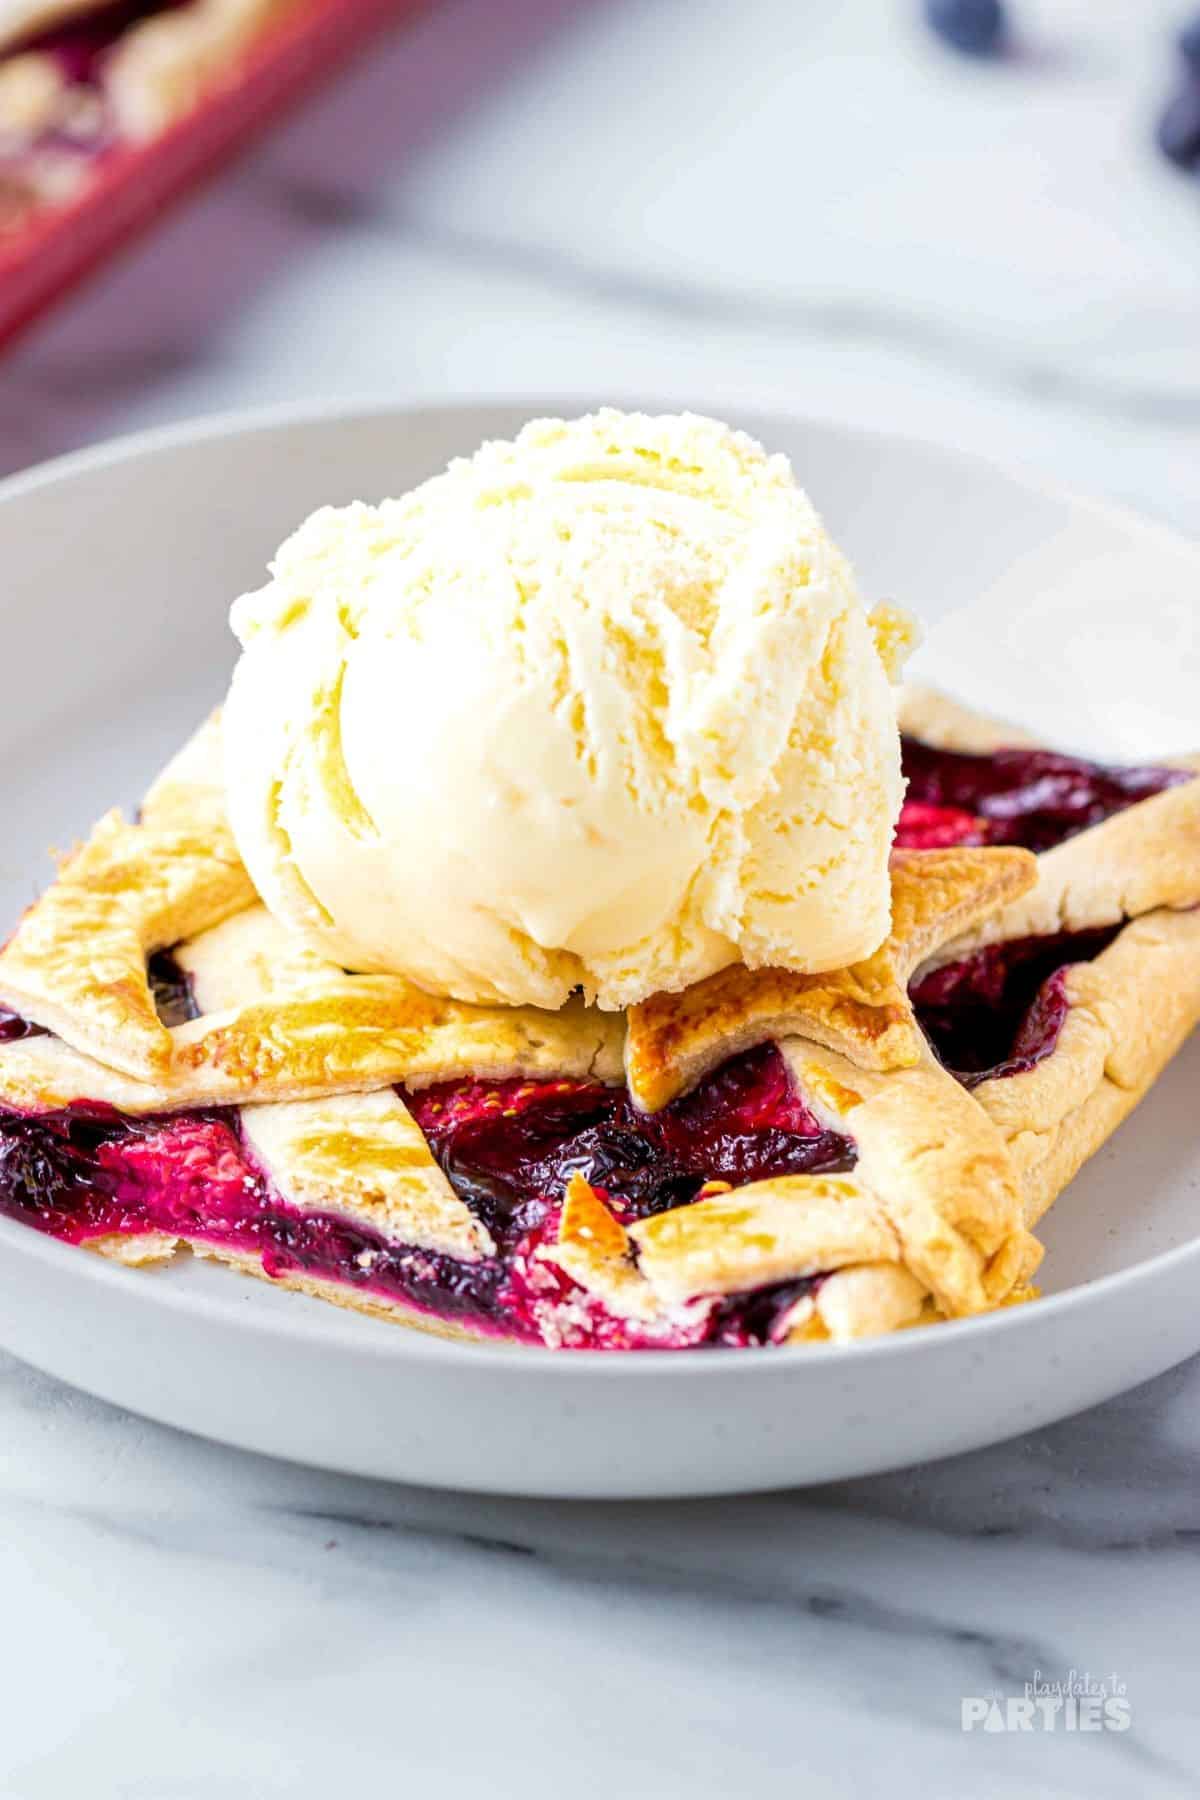 Strawberry, raspberry, blueberry pie with a scoop of vanilla ice cream.